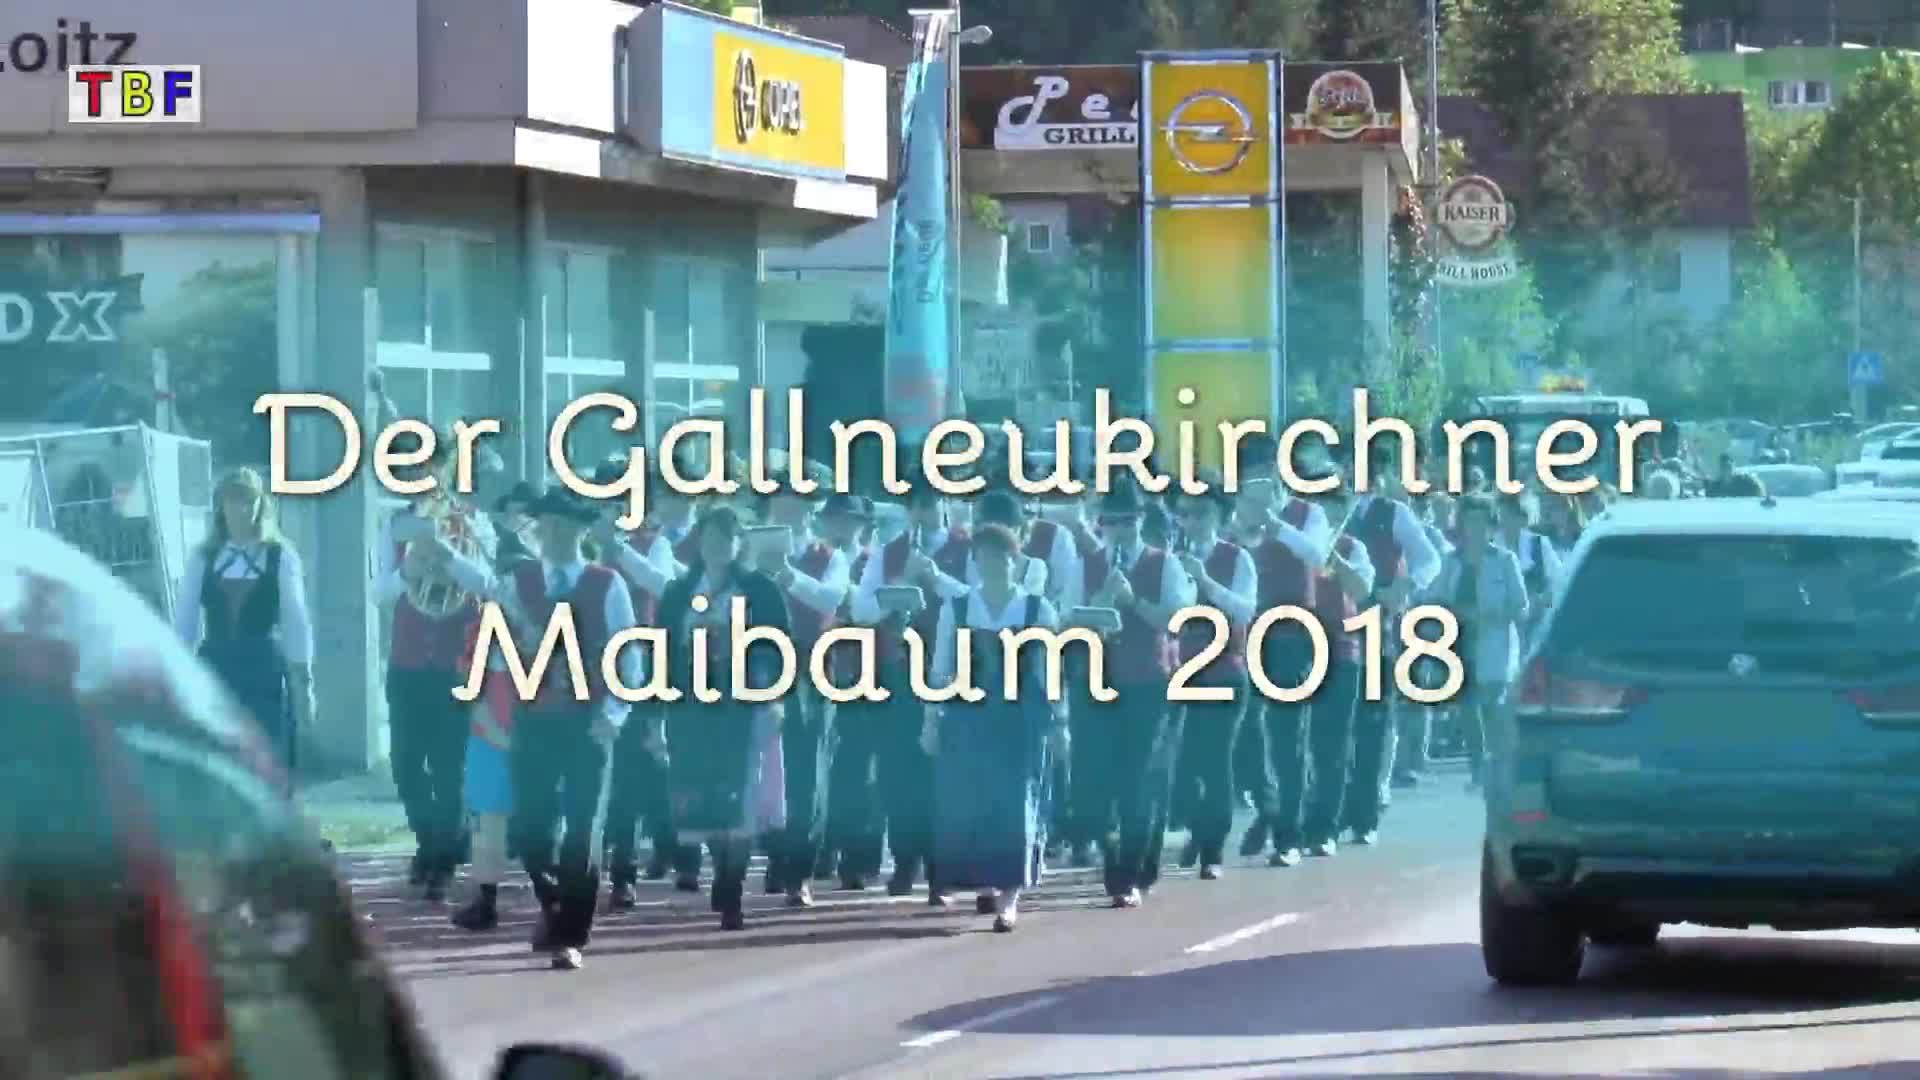 Der Gallneukirchner Maibaum 2018